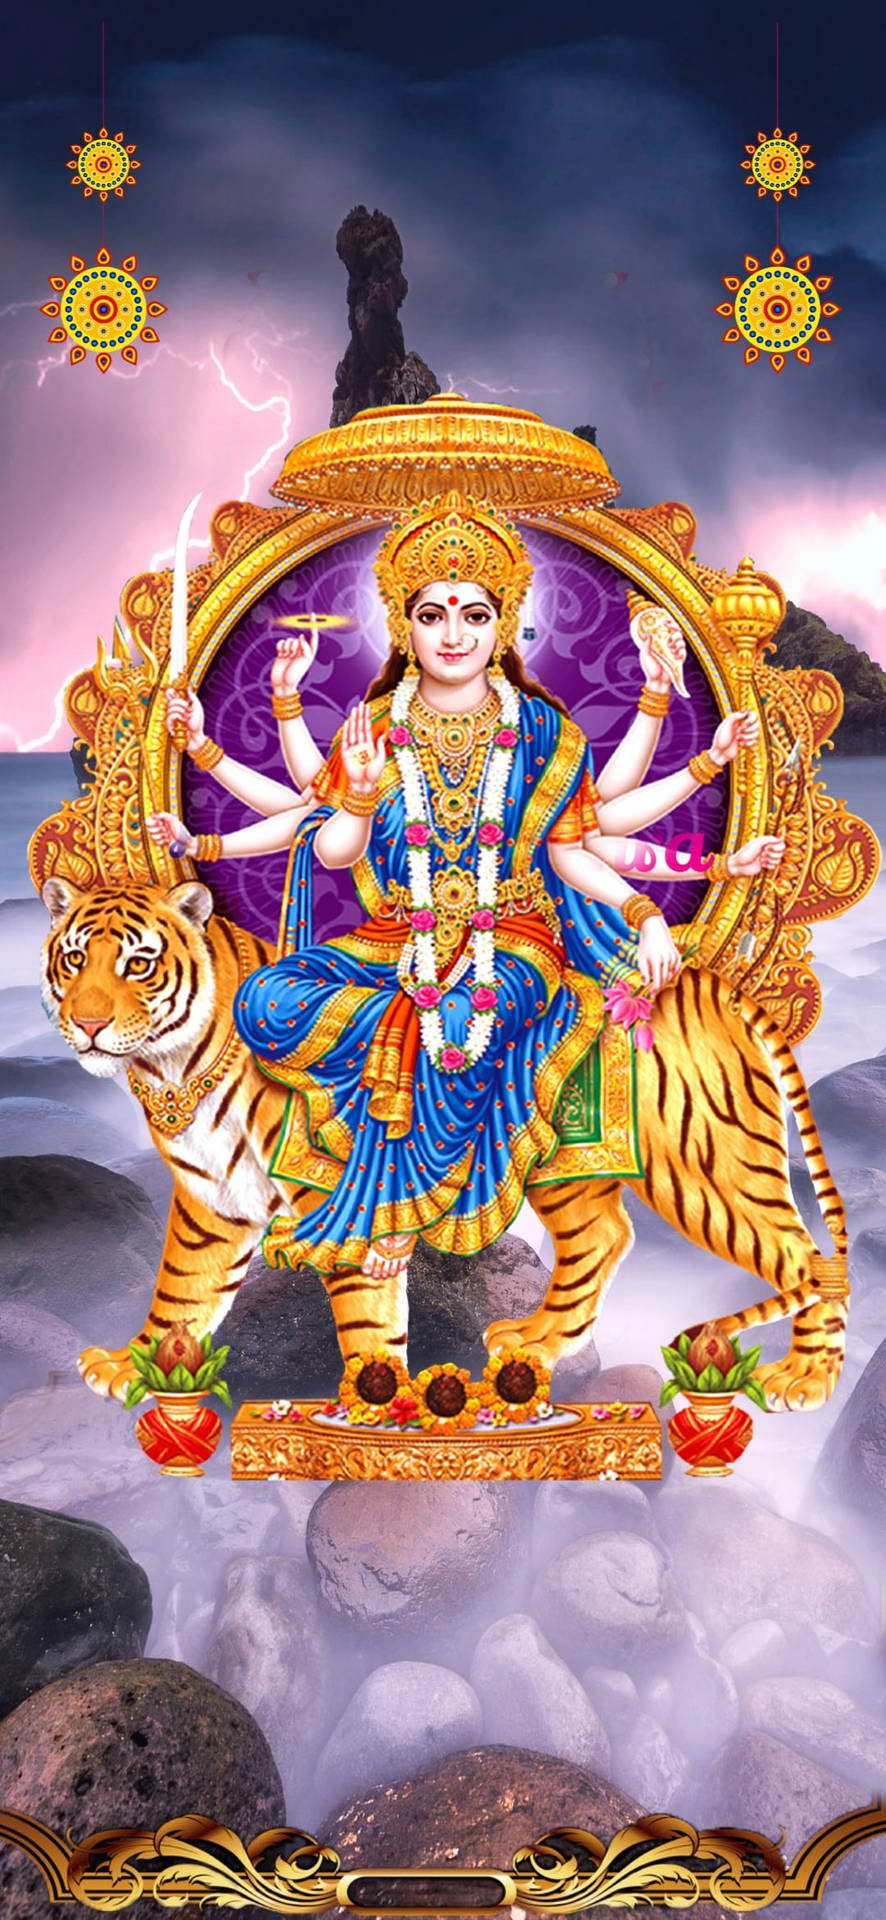 Durga Devi I En Storm. Wallpaper